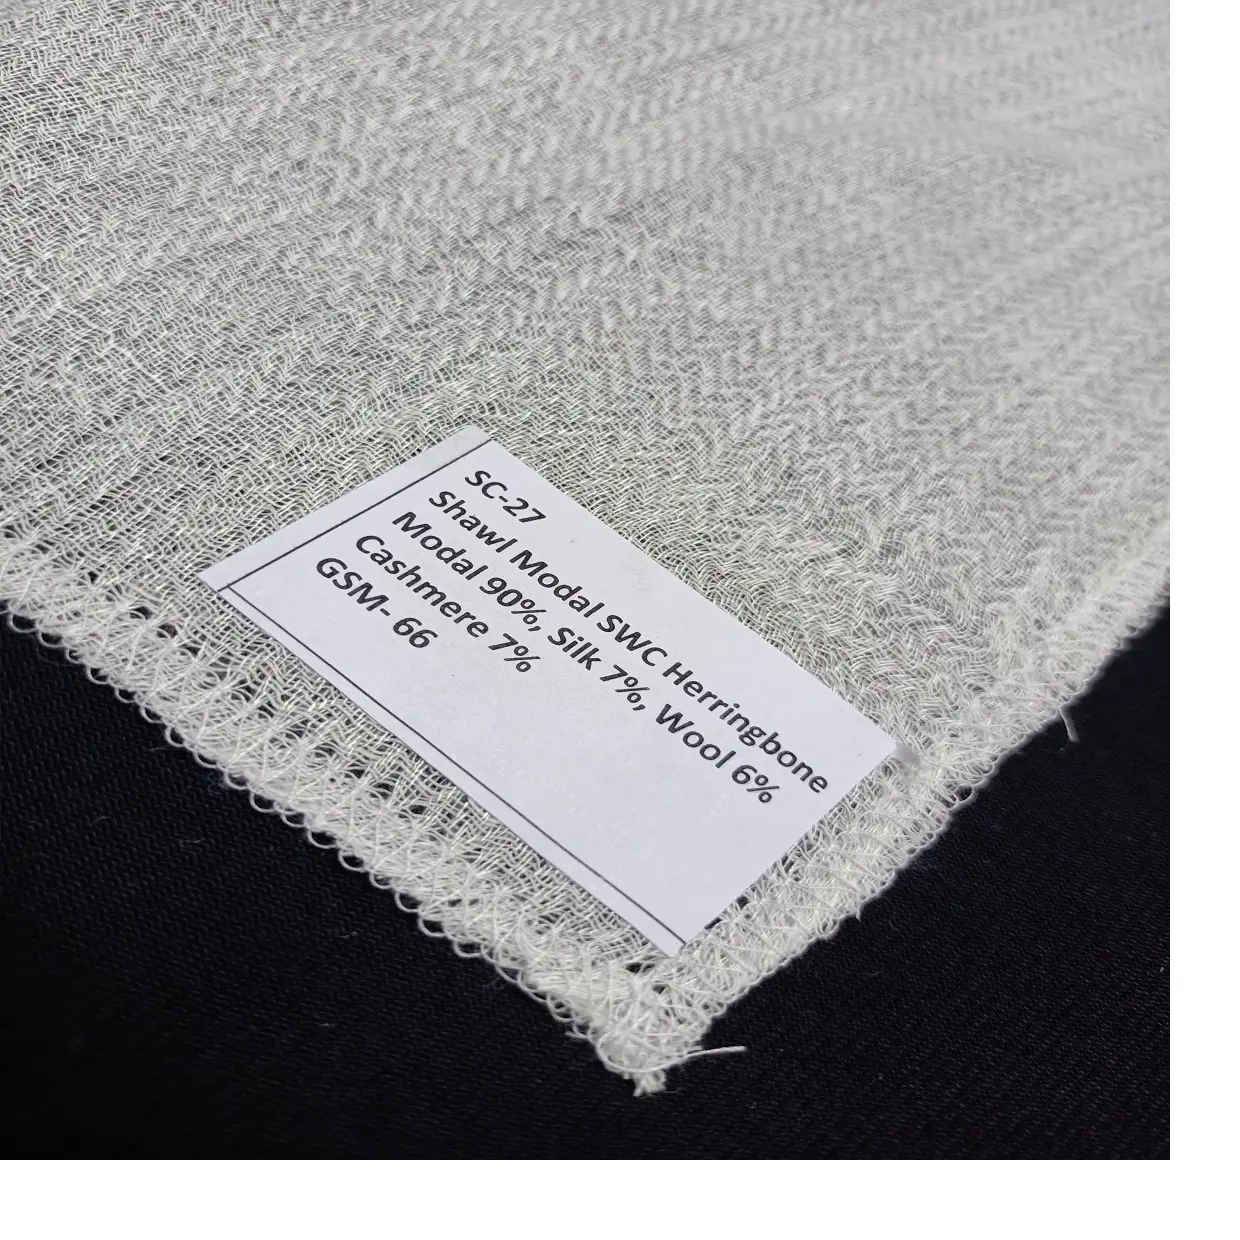 Telas blancas hechas con una mezcla de modal, Cachemira, seda y lana, adecuada para hacer bufandas y chales, se pueden teñir a medida